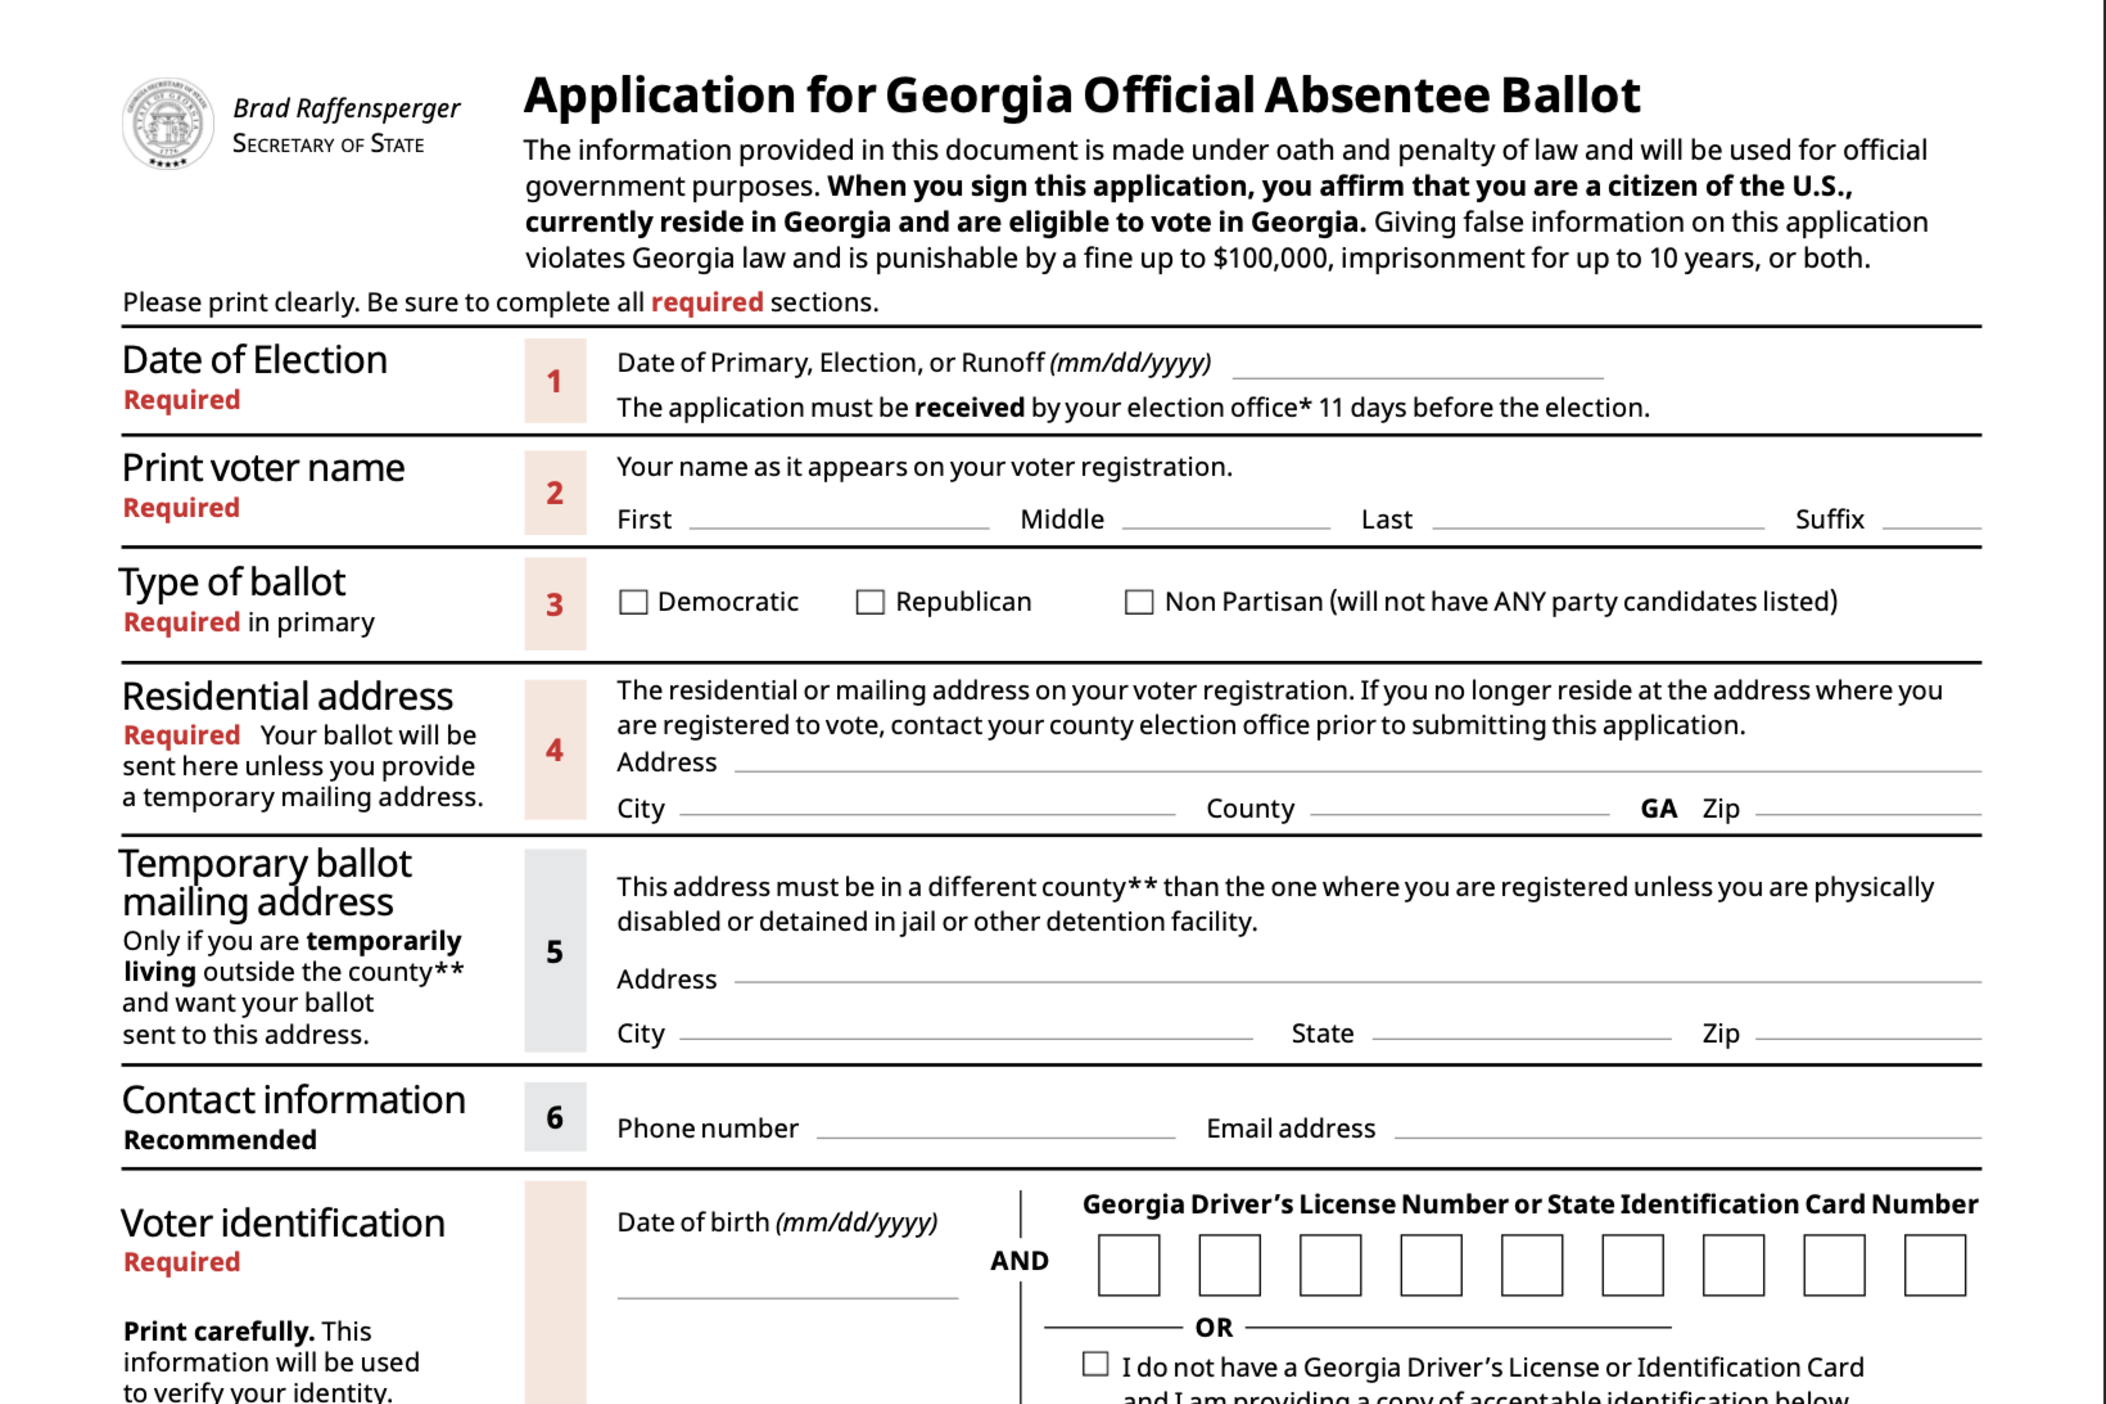 A screenshot of a blank Georgia Absentee ballot application